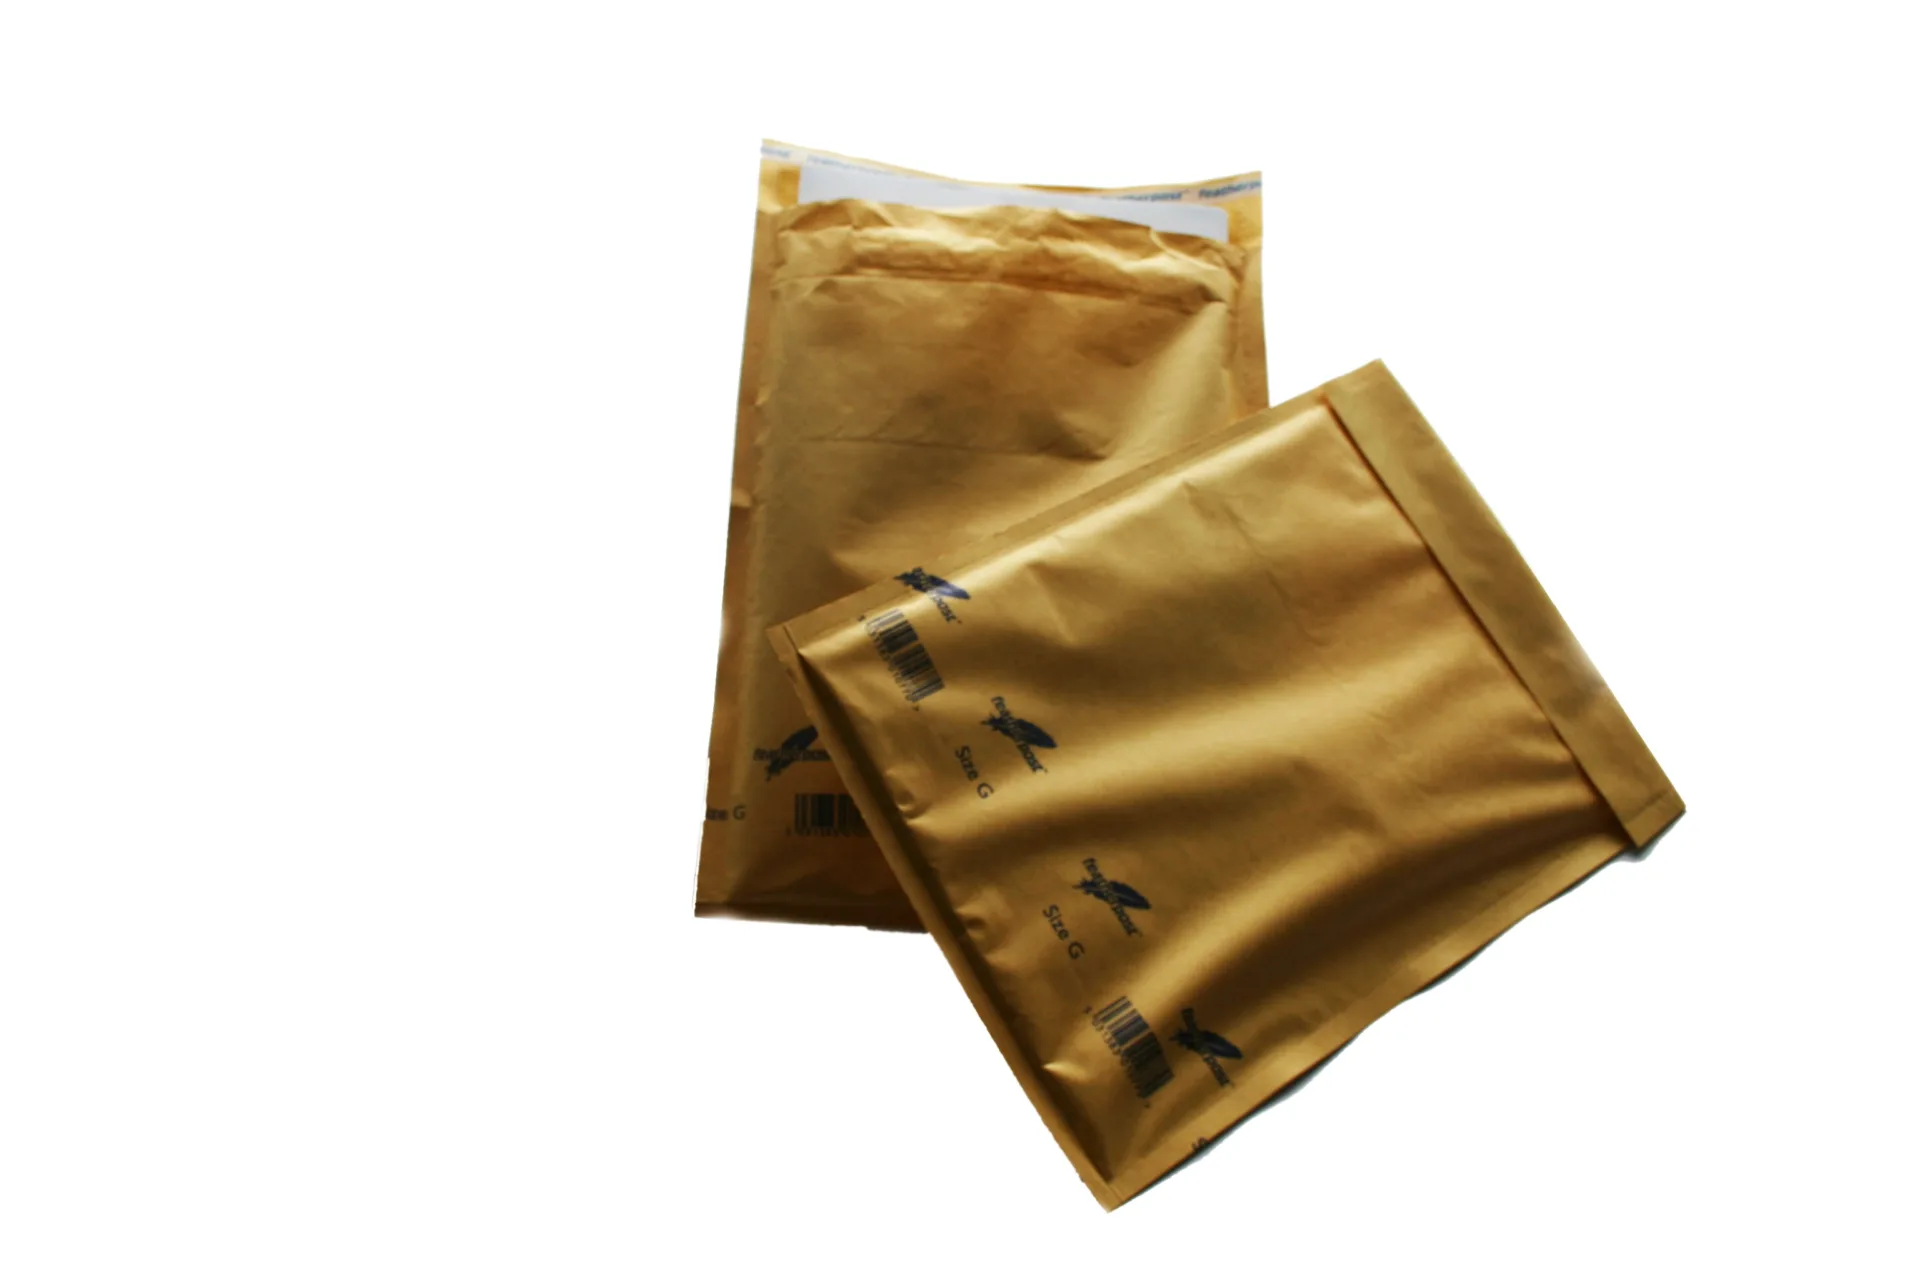 100 x Bubble Envelopes – 240 x 340mm ( Size G Gold )